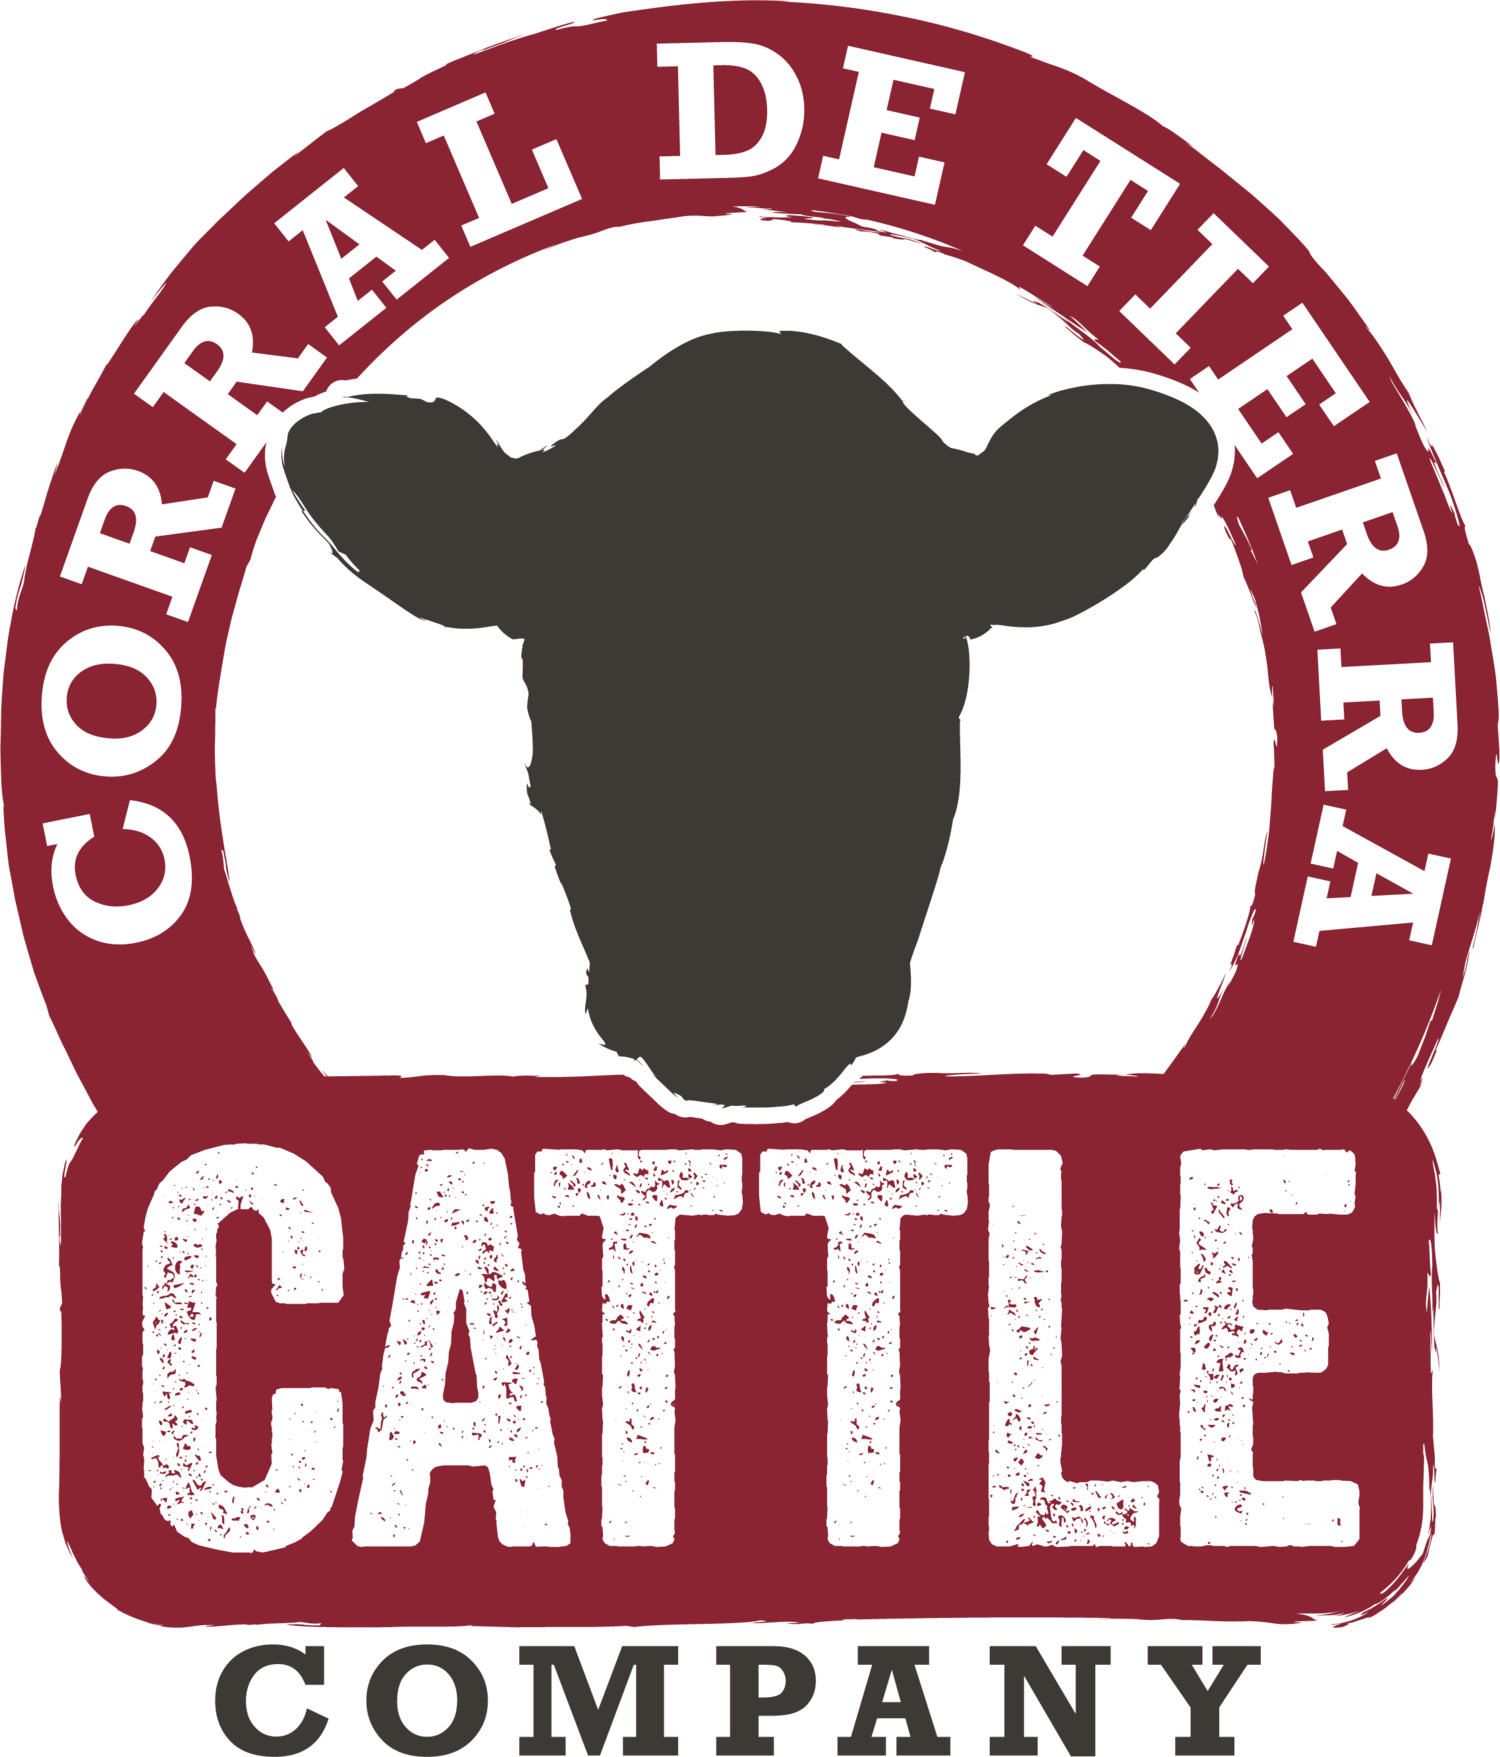 CORRAL DE TIERRA CATTLE CO.